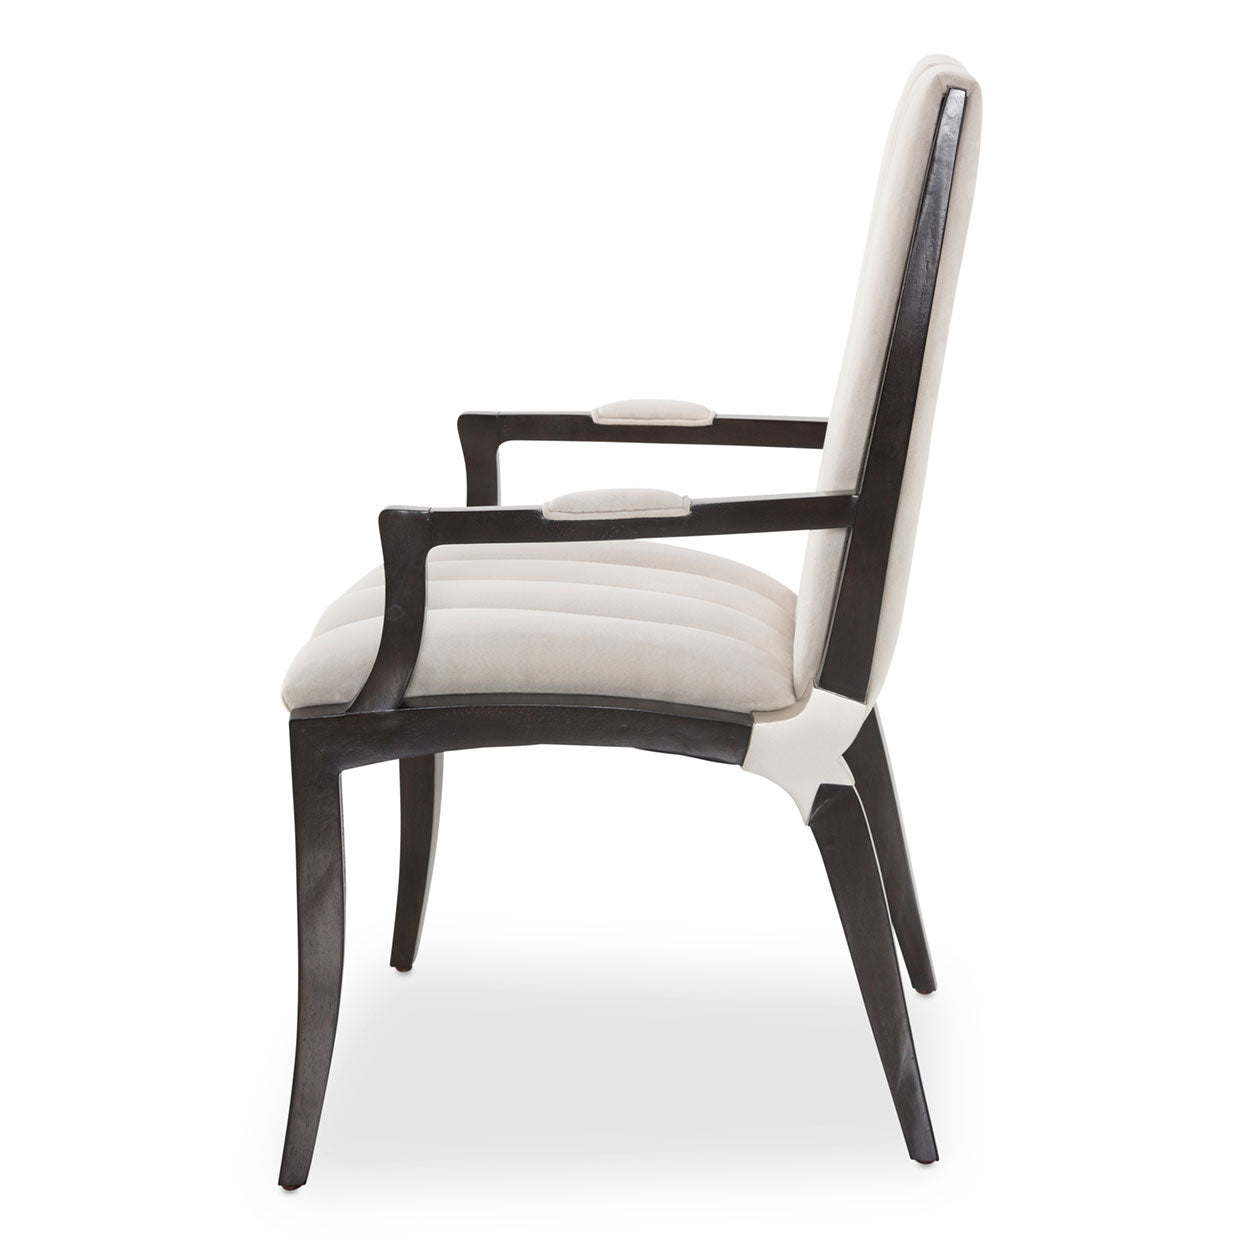 PARIS CHIC Arm Chair - Dream art Gallery